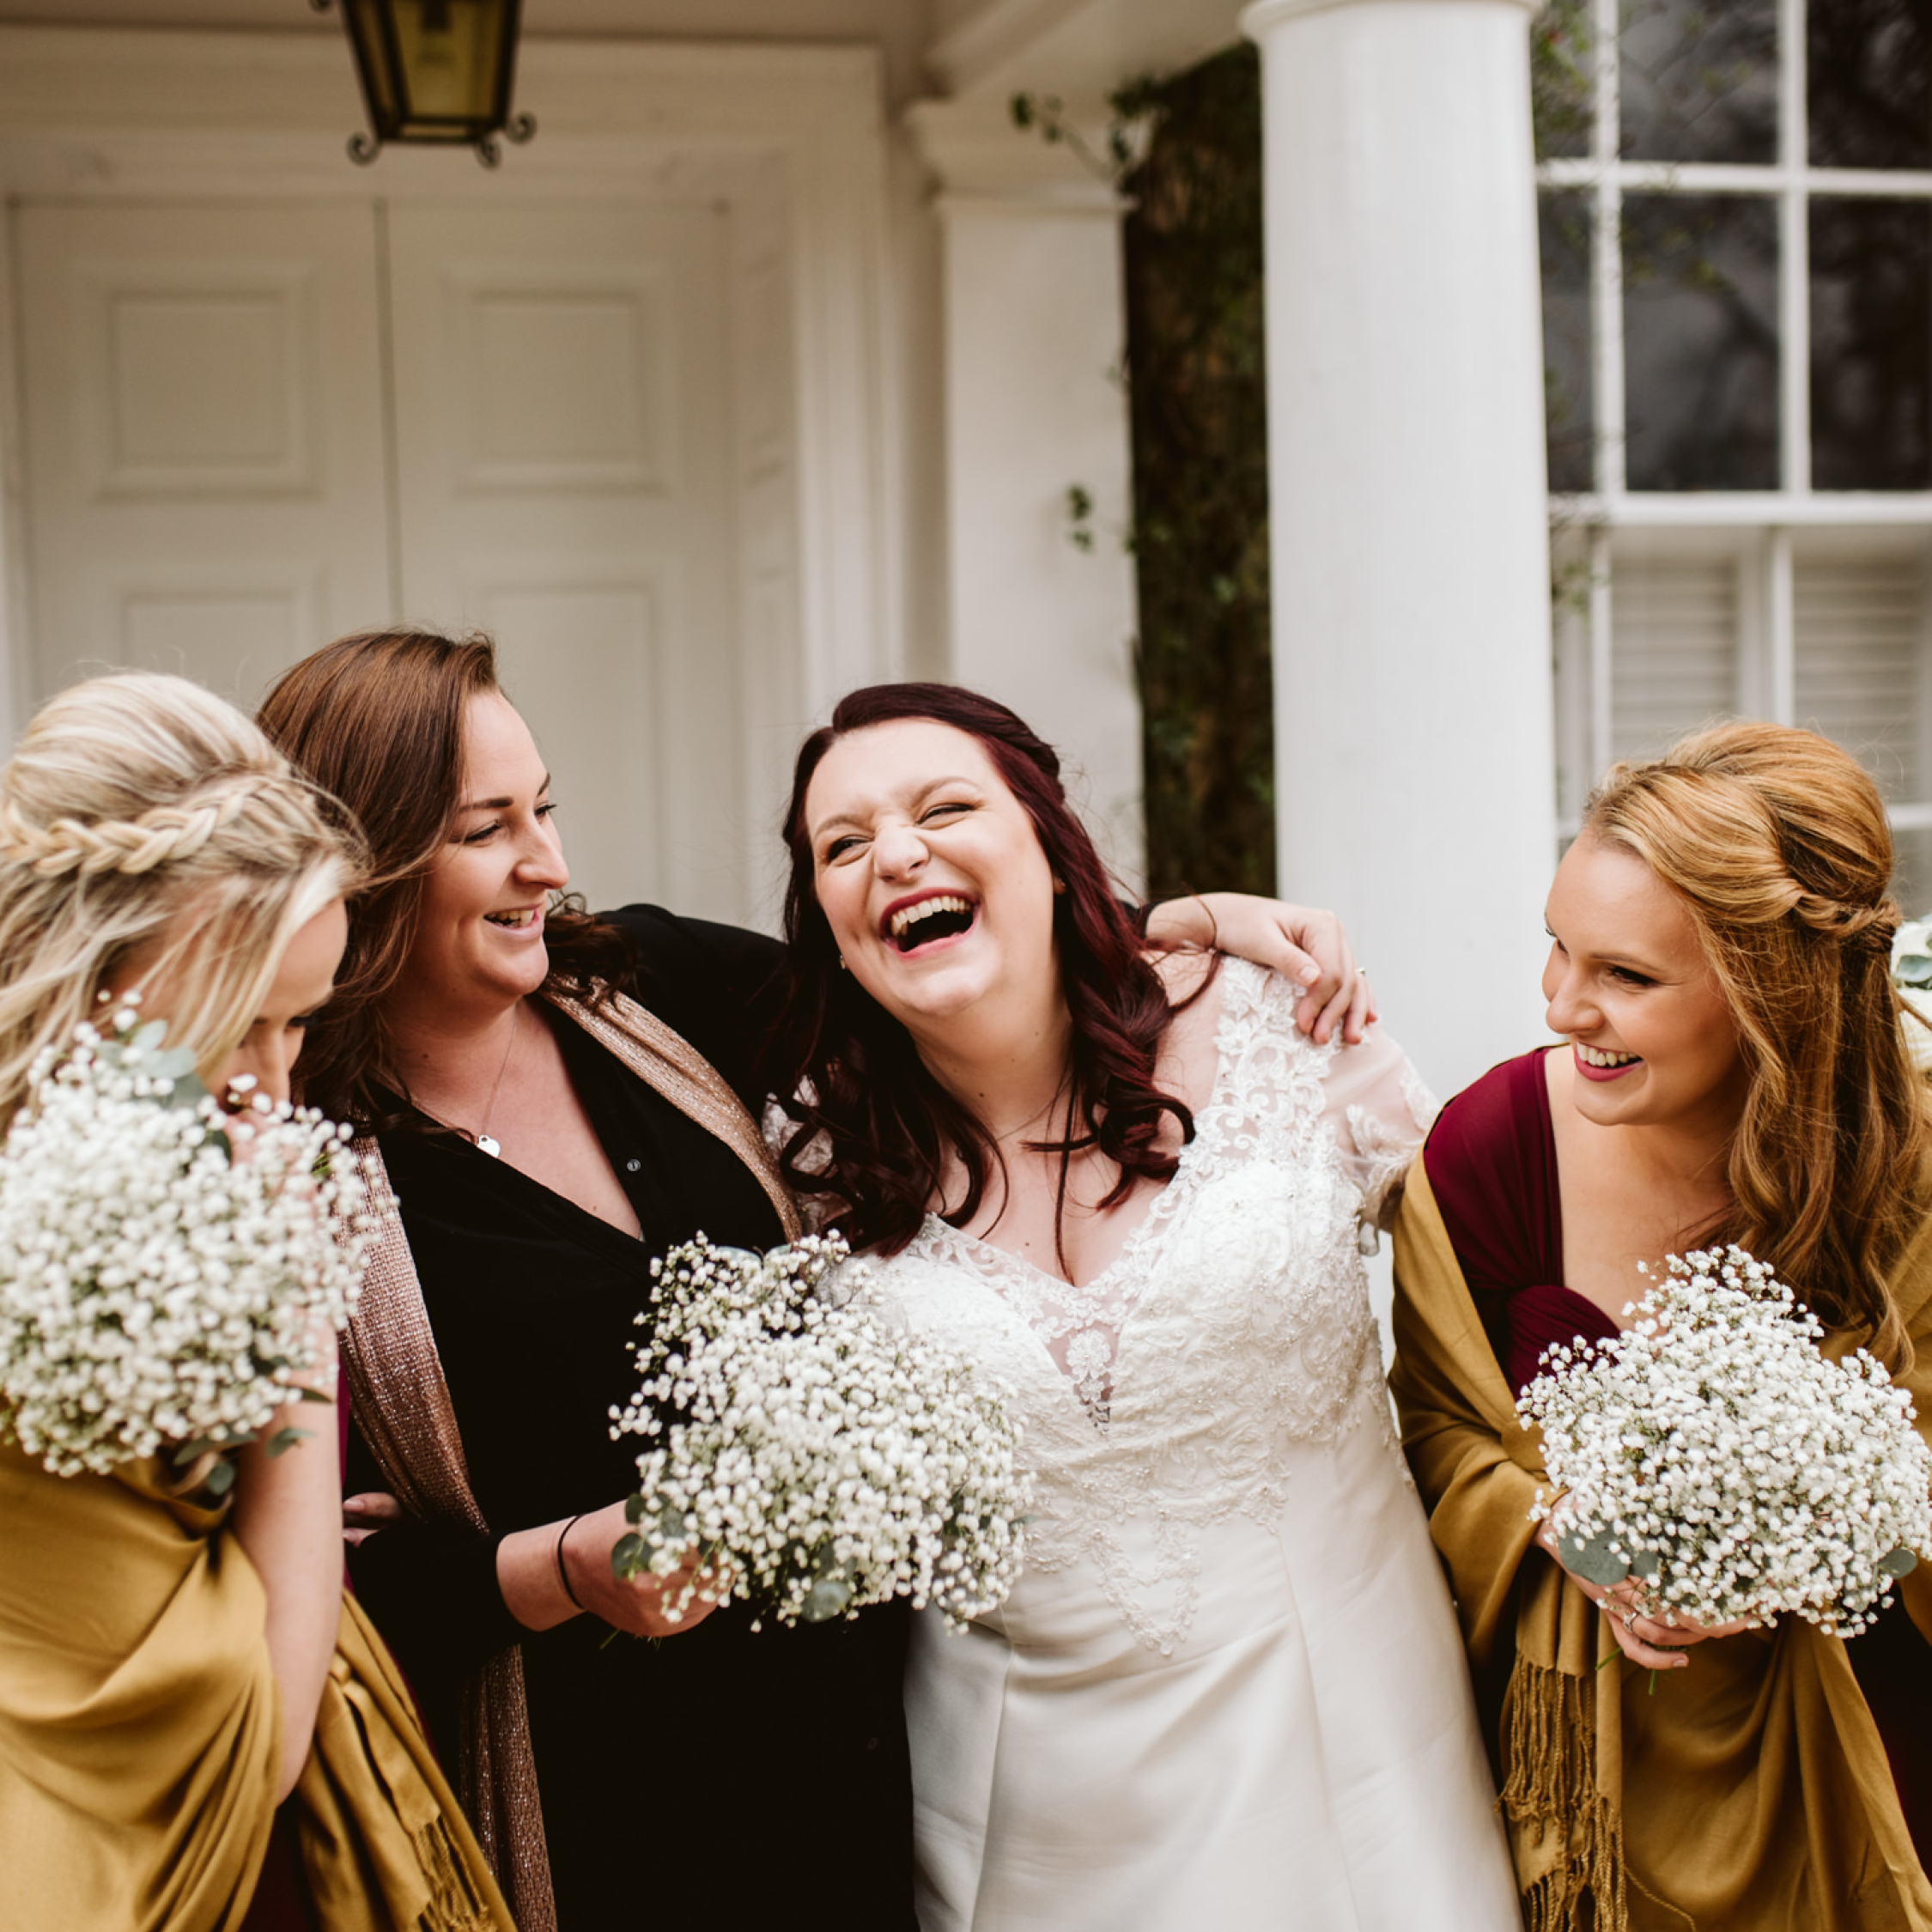 Gorgeous autumn wedding ideas, autumn bridesmaids